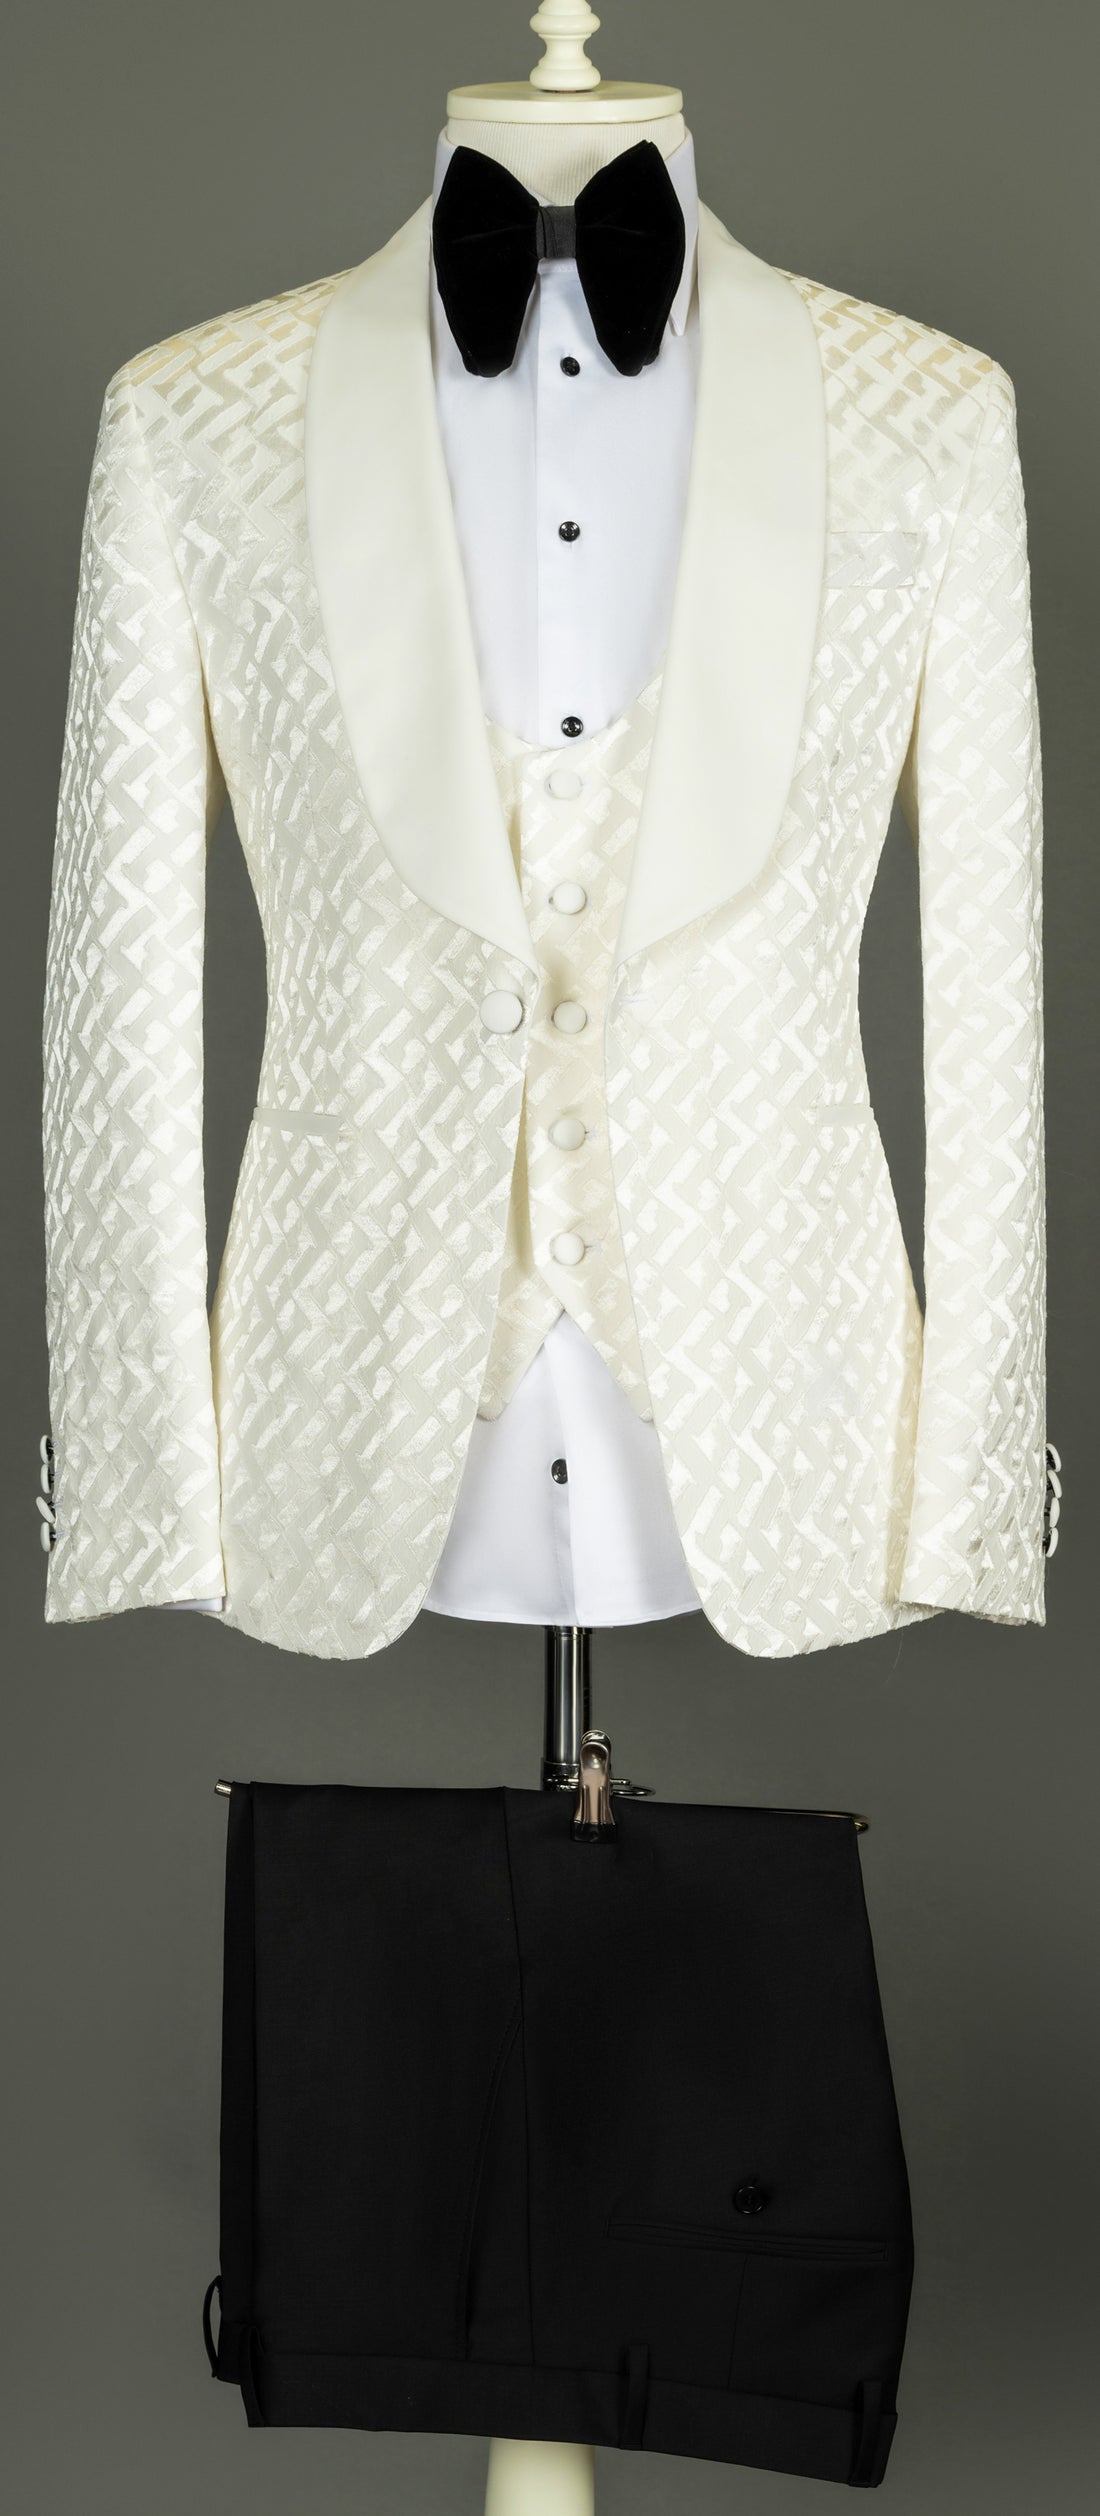 Connaisseur - Ivory white H pattern 3-piece slim fit tuxedo with U vest.